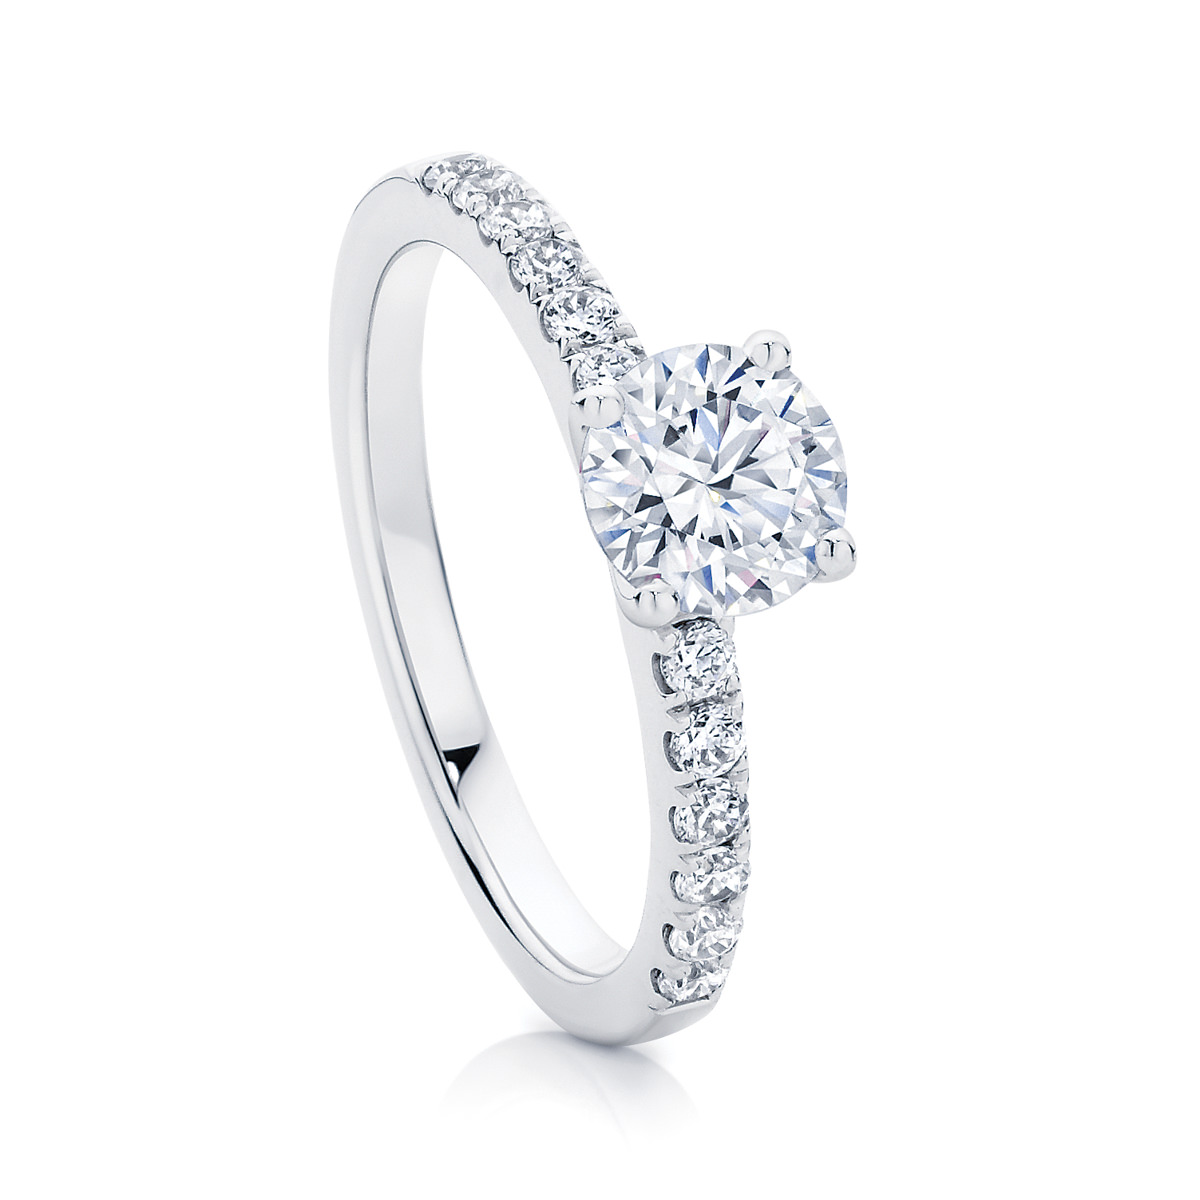 Diamond Ring Images - Free Download on Freepik